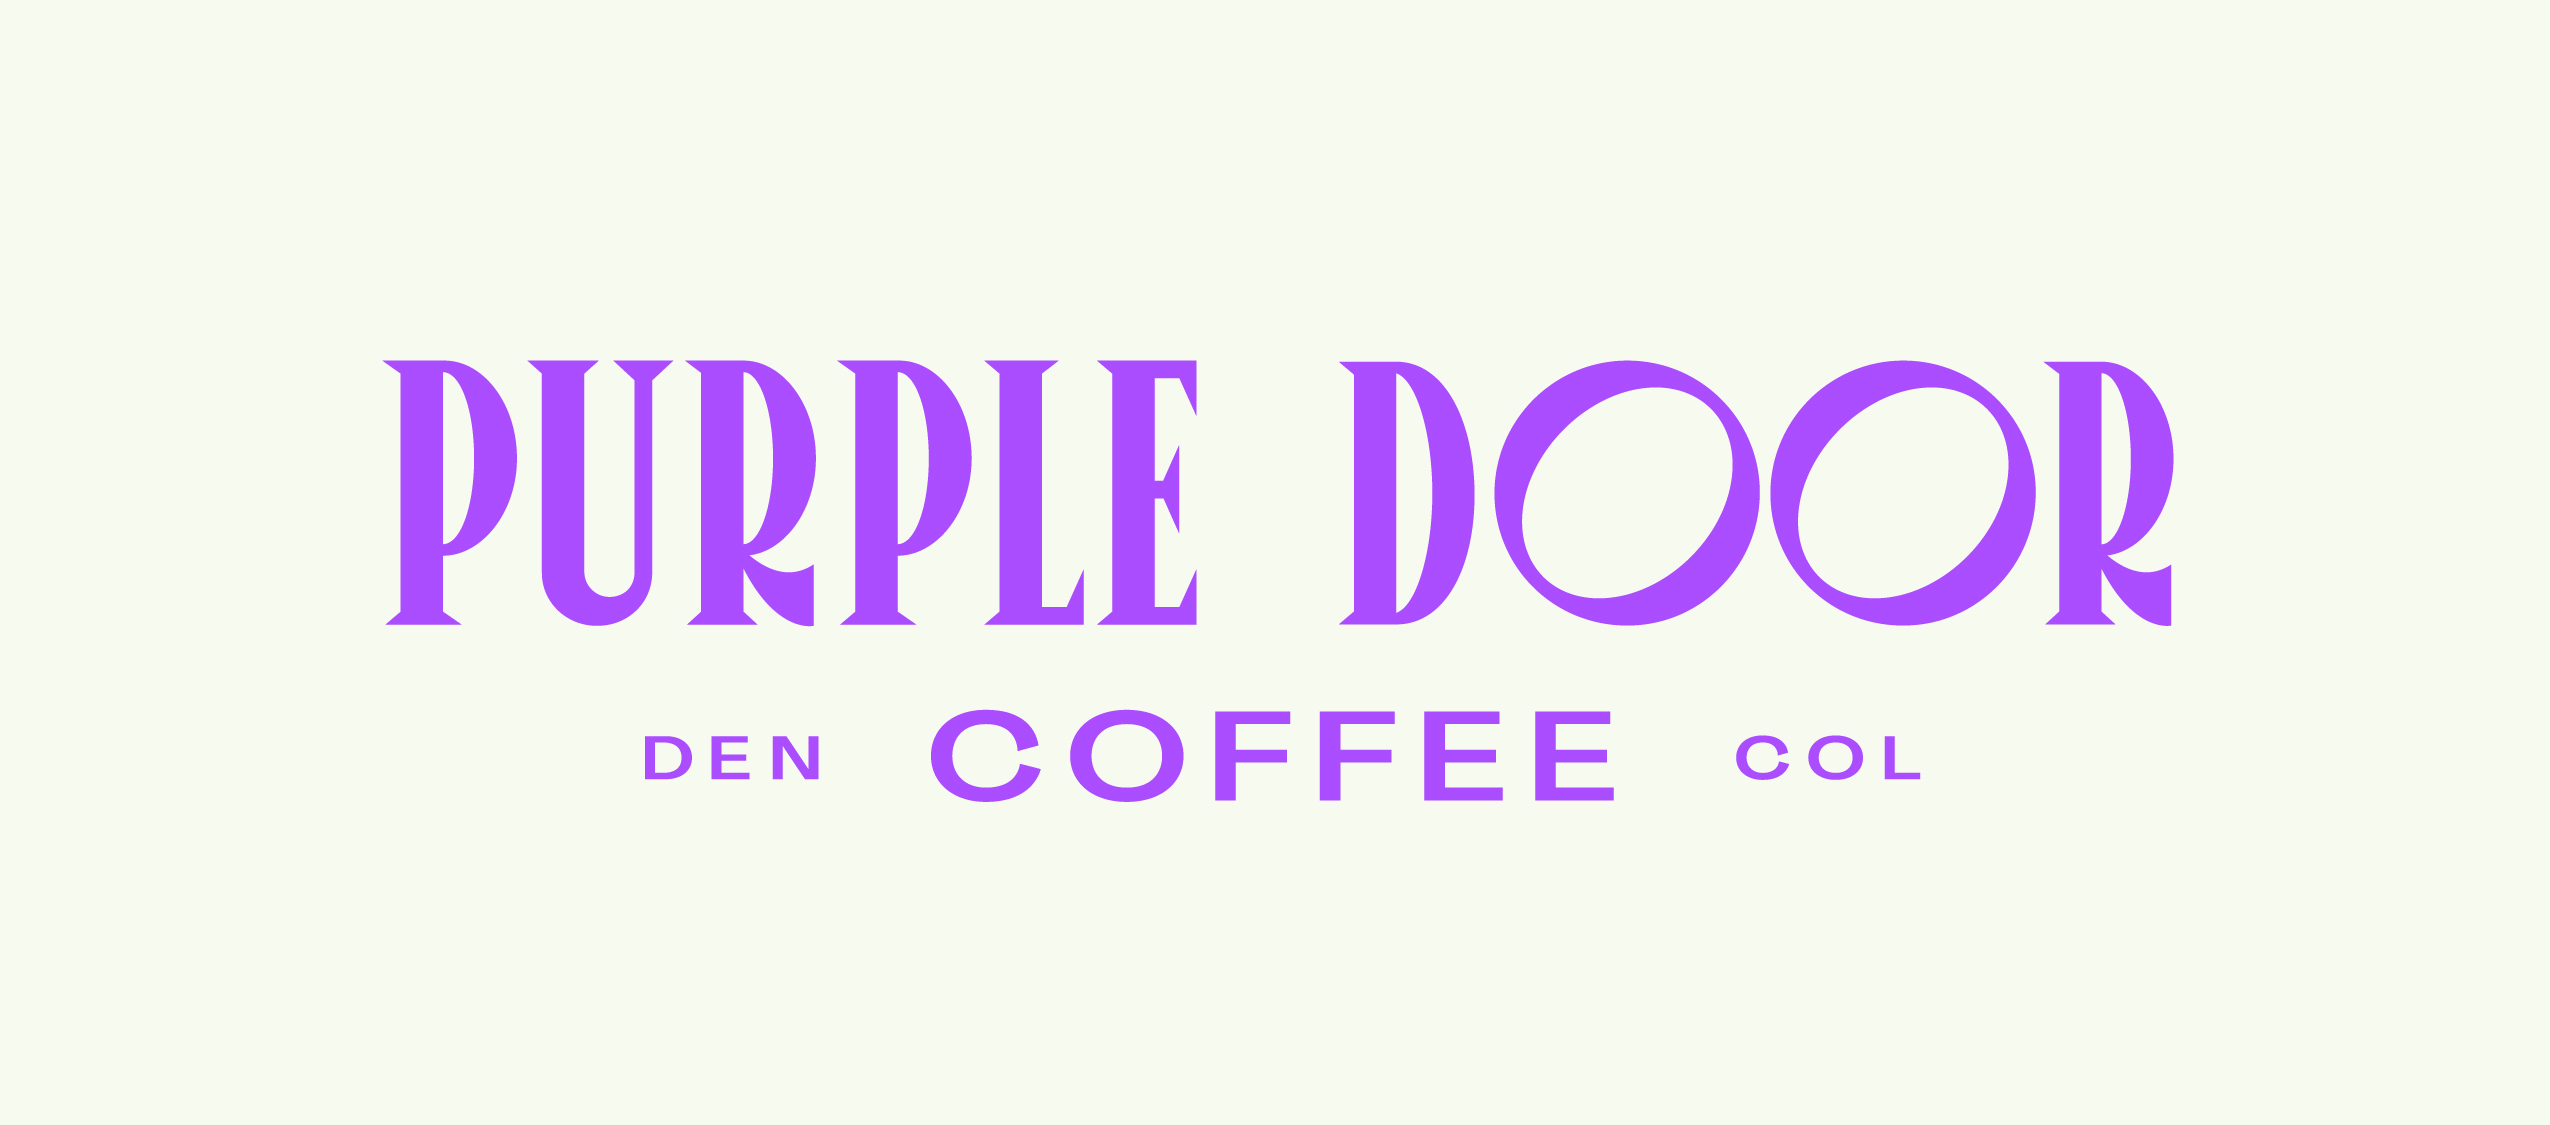 purpledoorcoffee